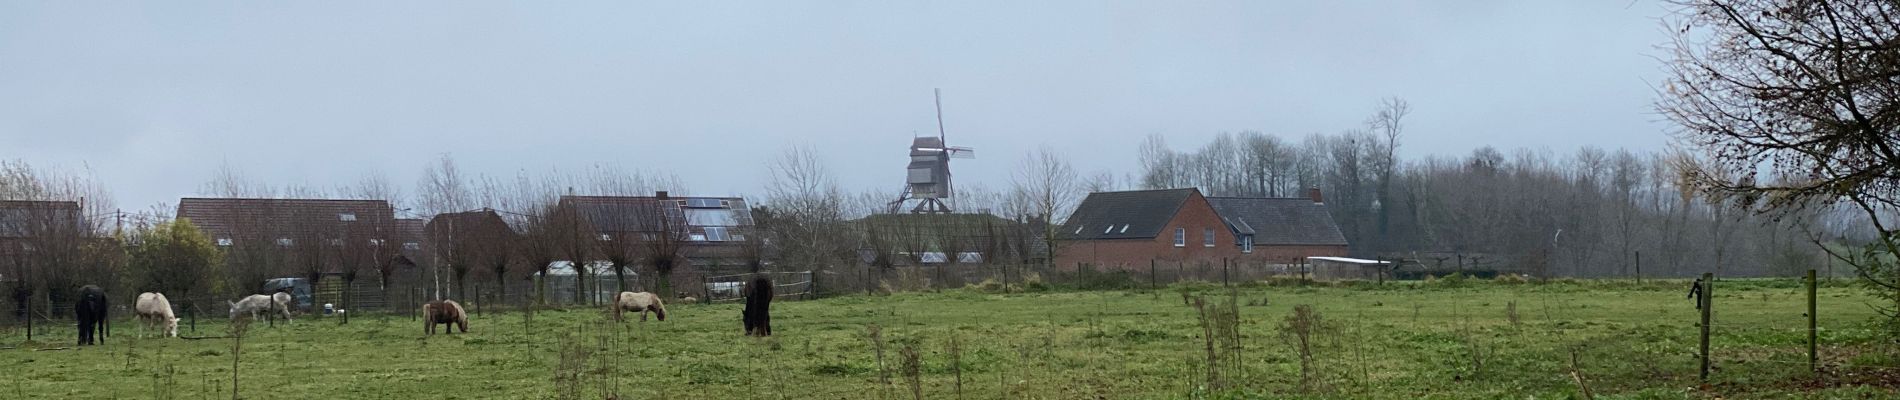 Randonnée Marche Tournai - Thimougies moulin 7,7 km - Photo